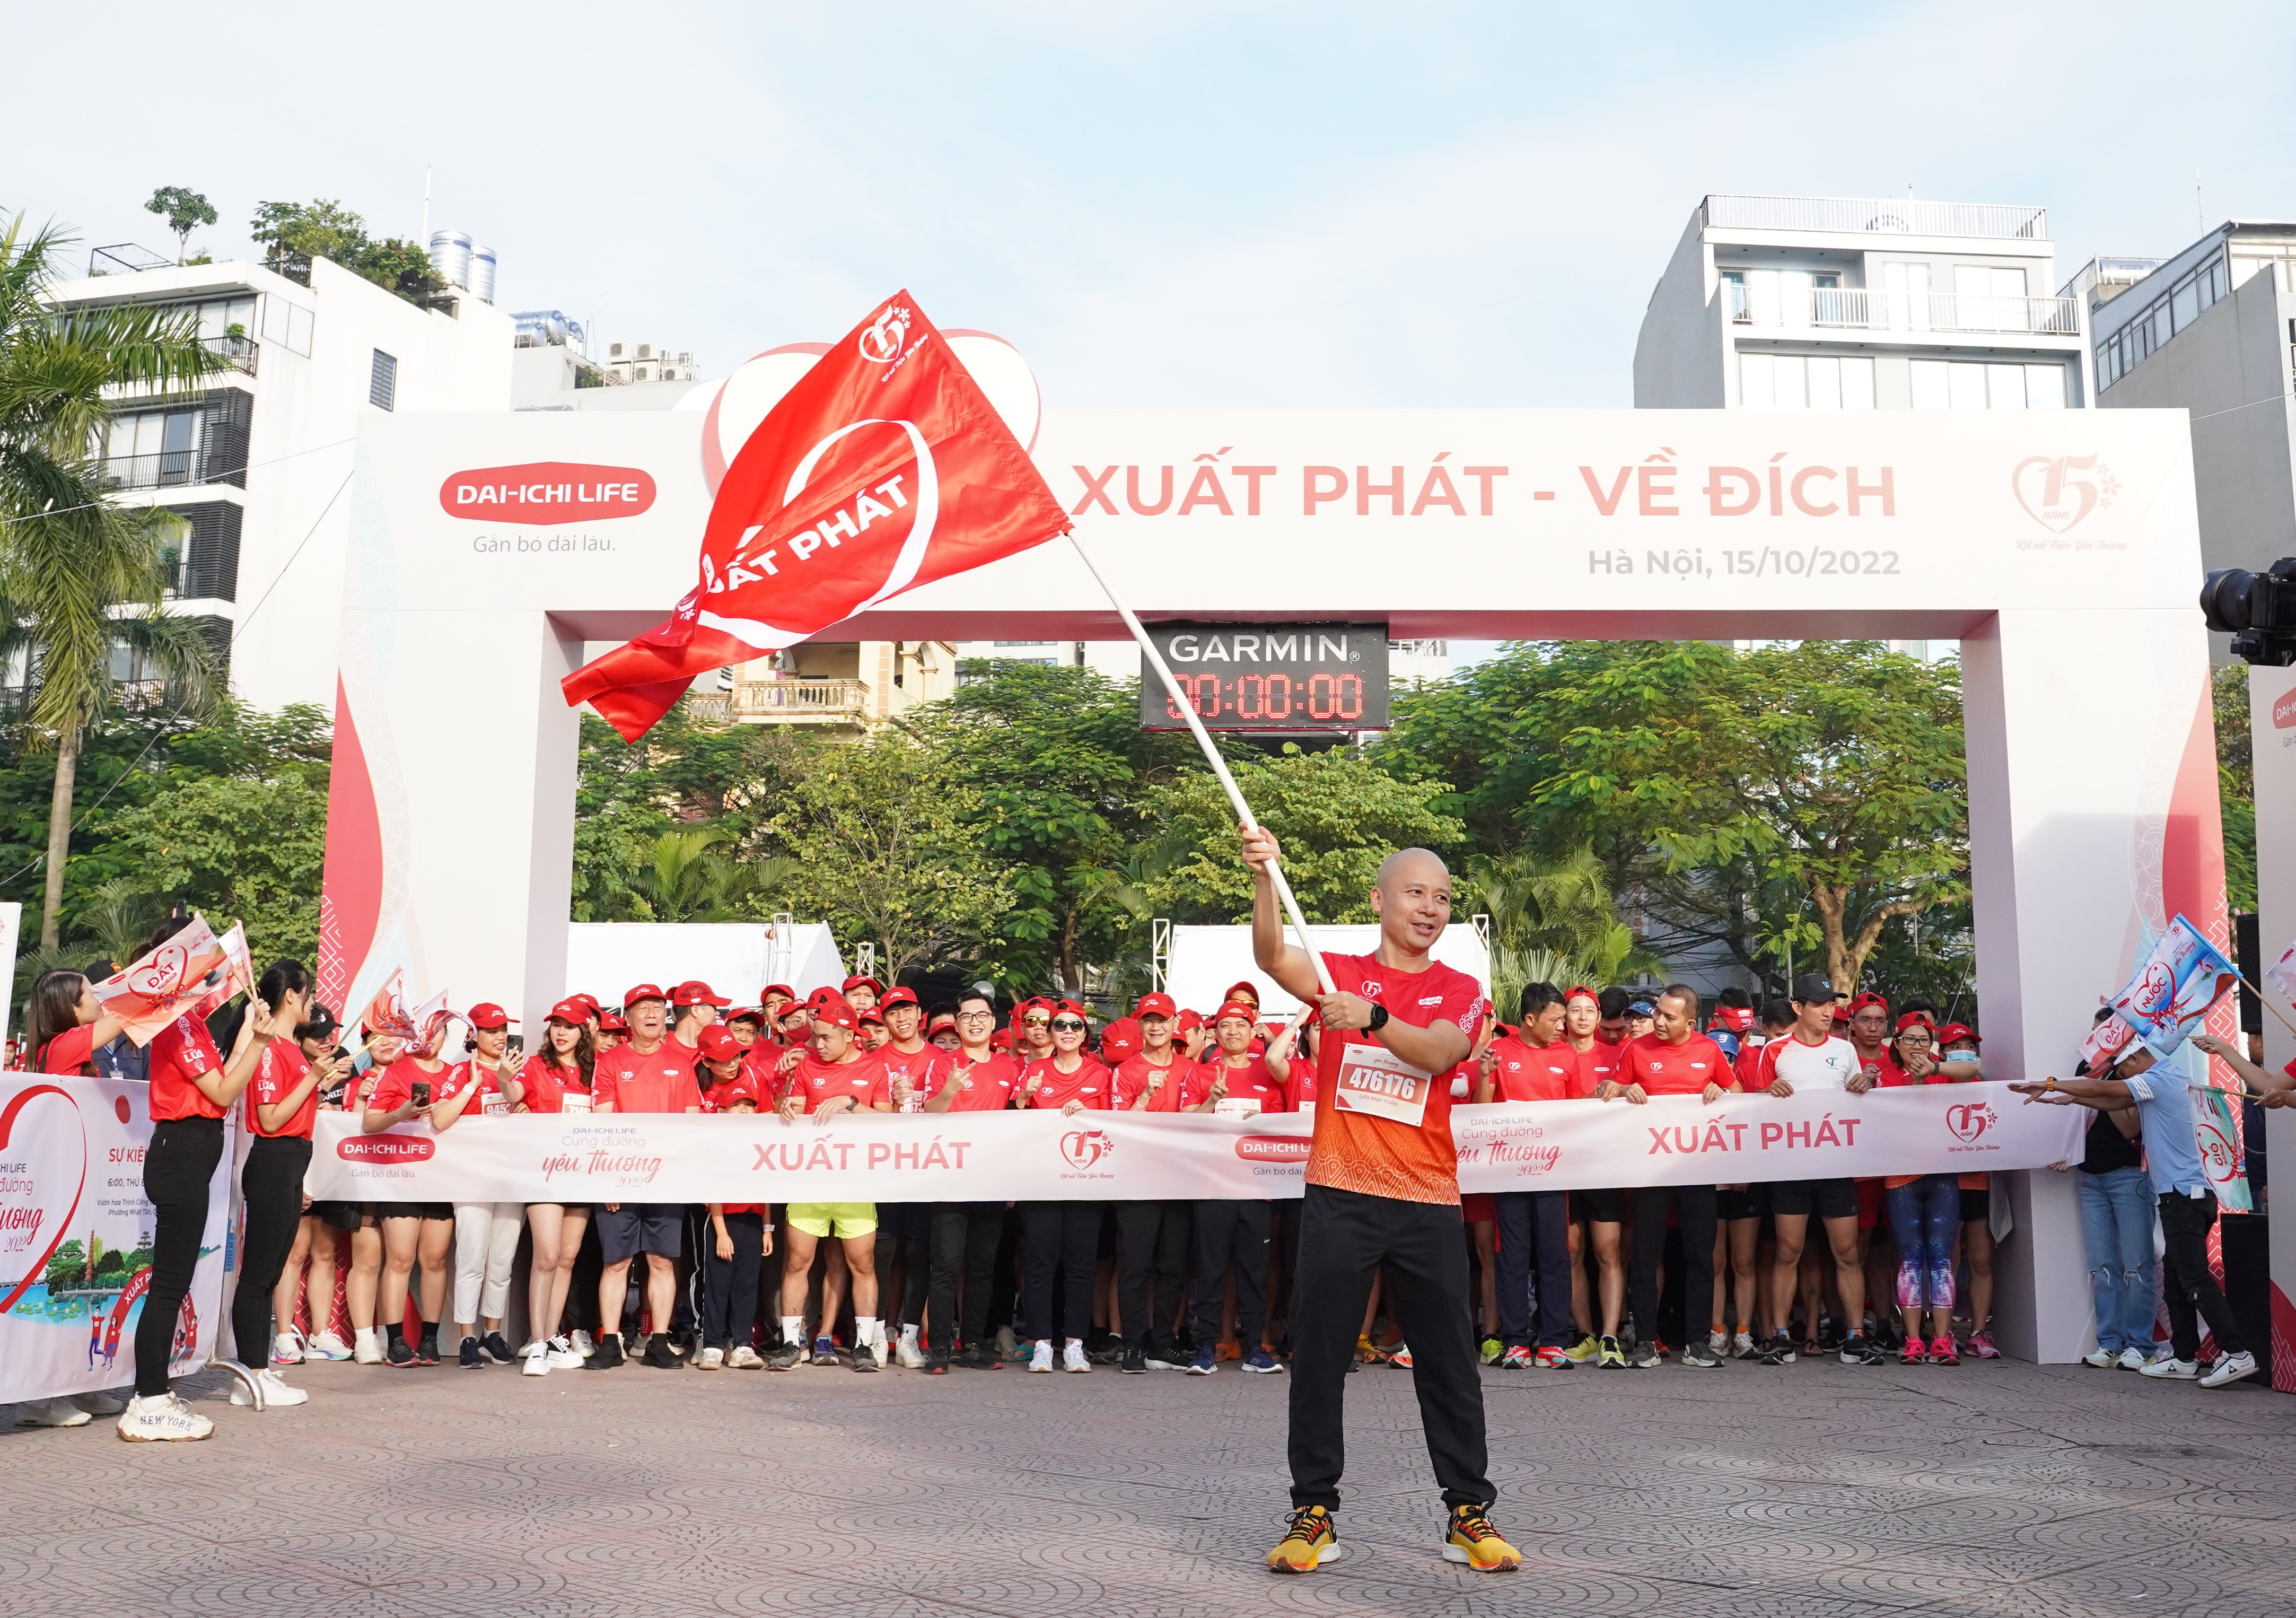 Ý nghĩa cờ trong giải đua F1 - cờ xuất phát - cờ VN: 
Giải đua xe F1 quốc tế đã trở lại Việt Nam sau 10 năm vắng bóng, trở thành một sự kiện nổi bật trong năm